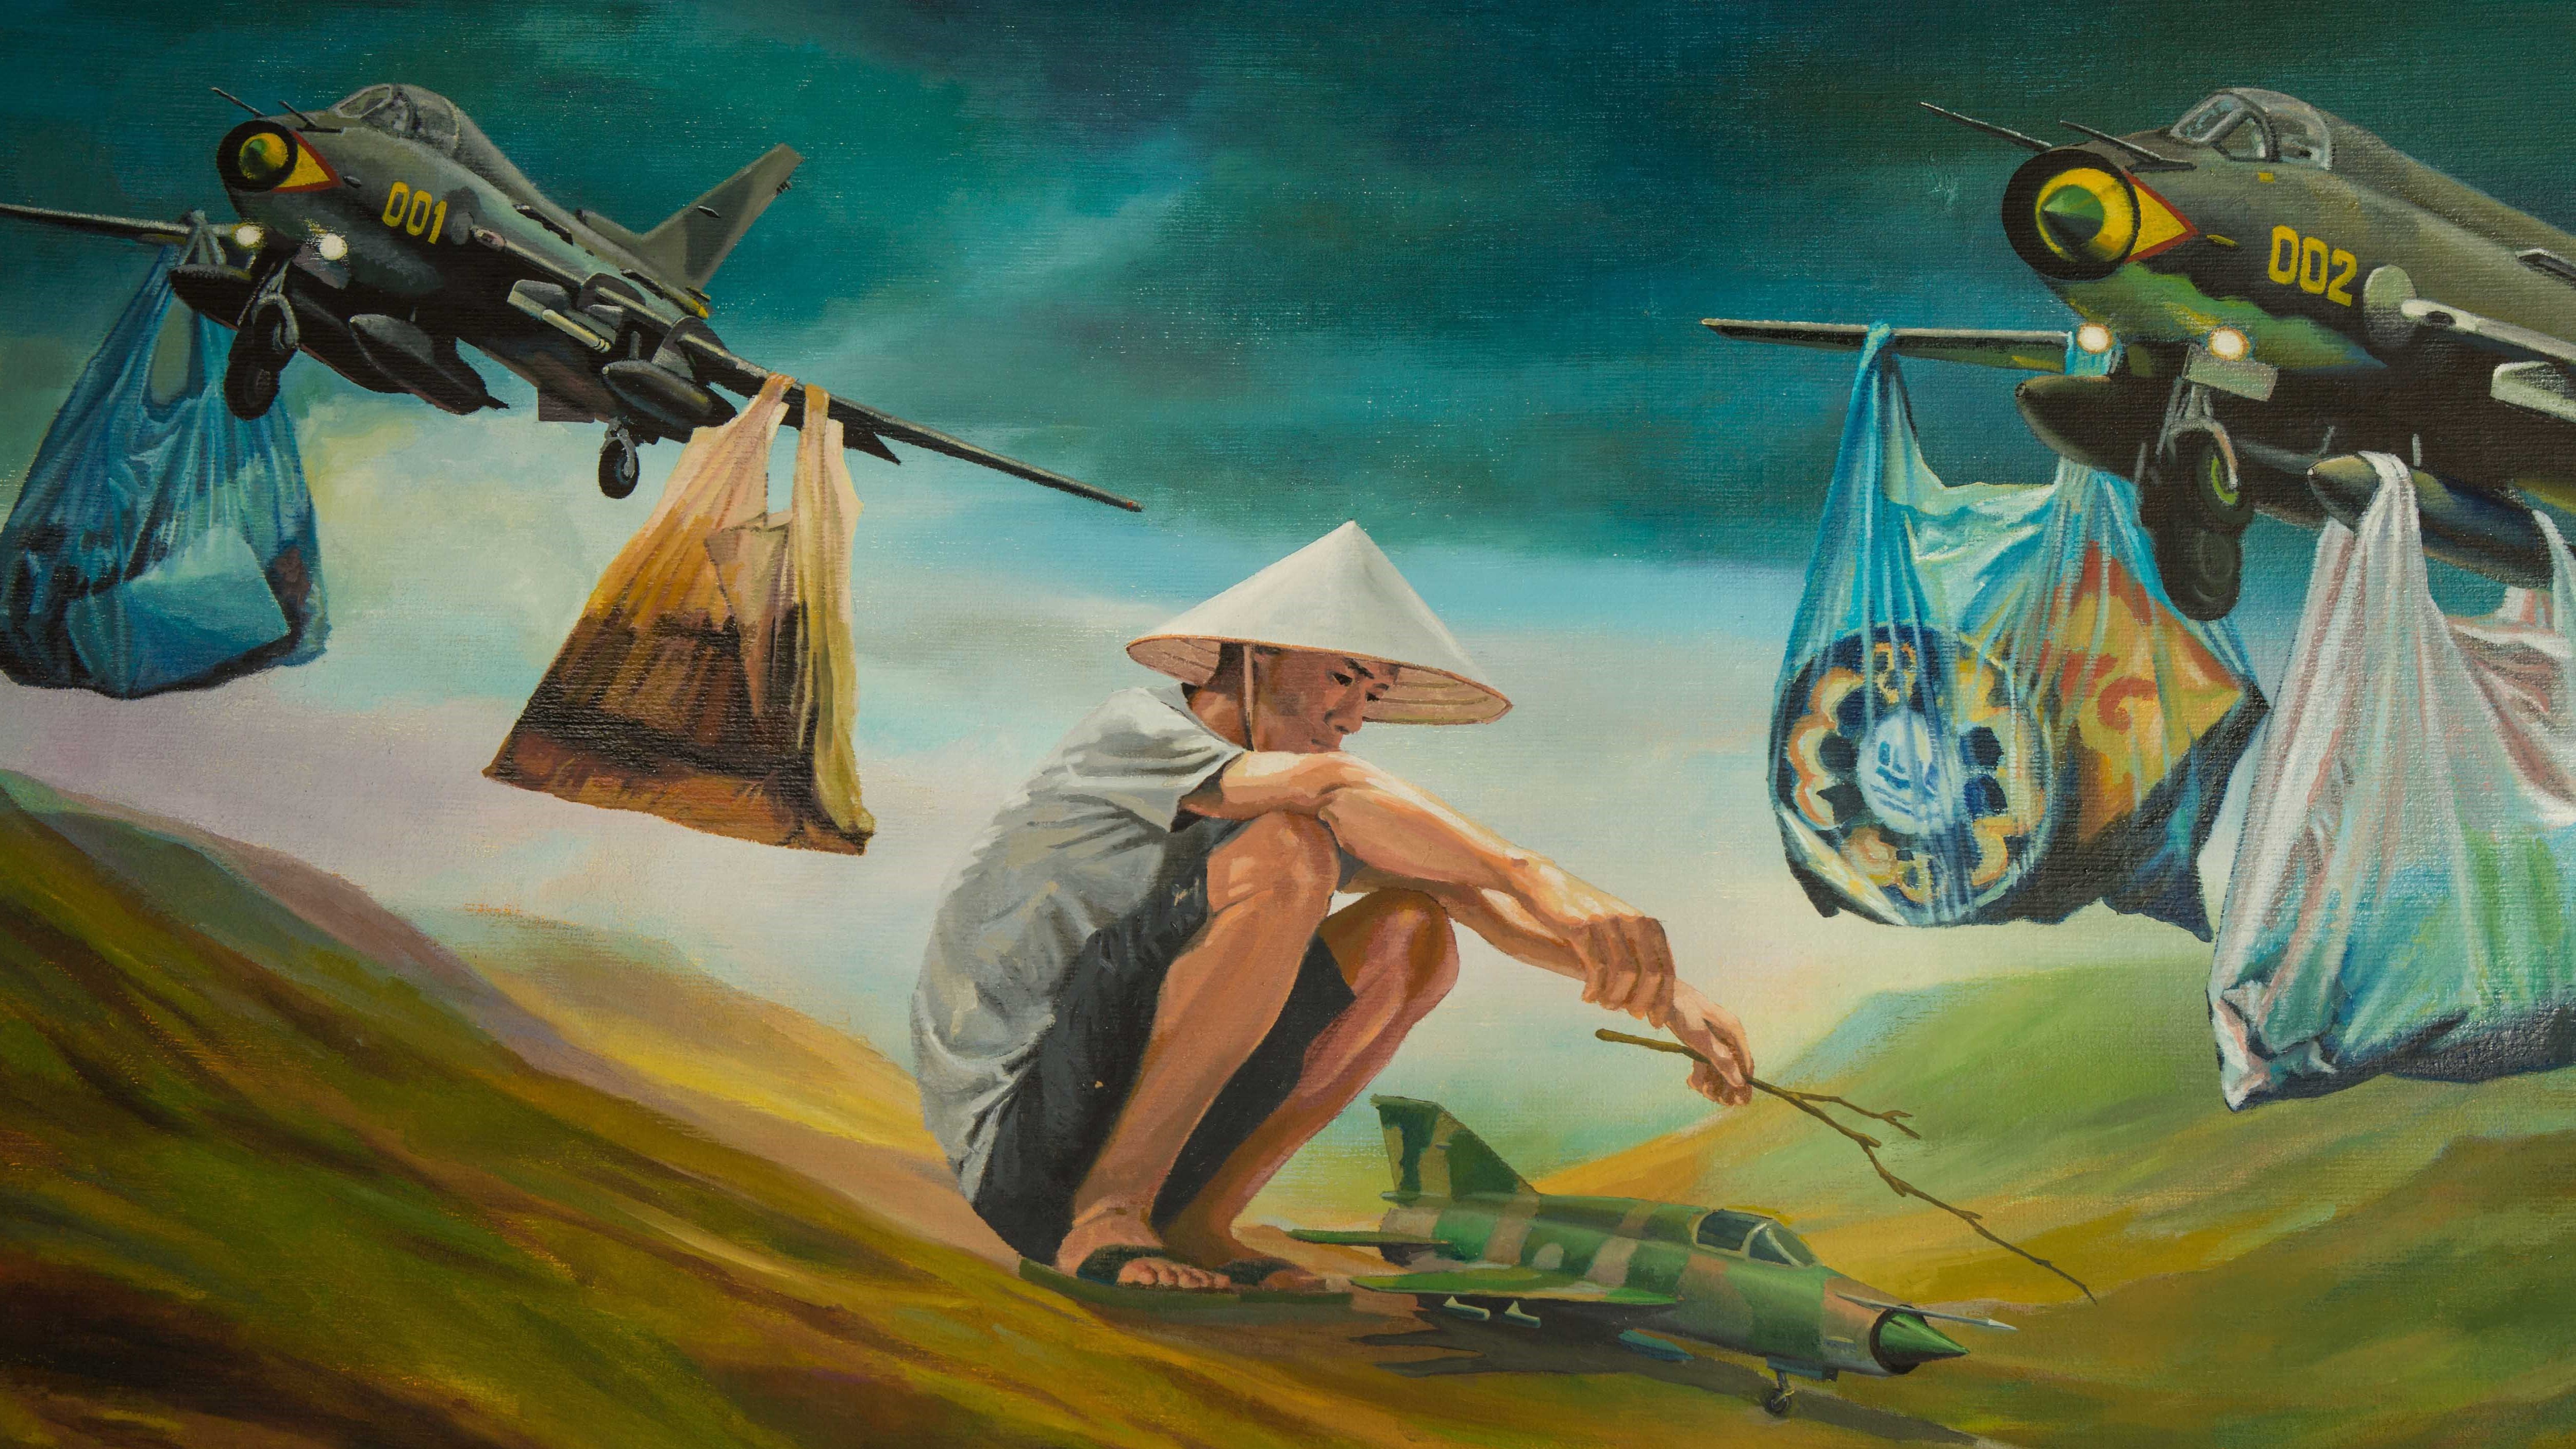 Hình ảnh tranh vẽ sơn dầu rất đẹp chàng nông dân và máy bay chiến đấu